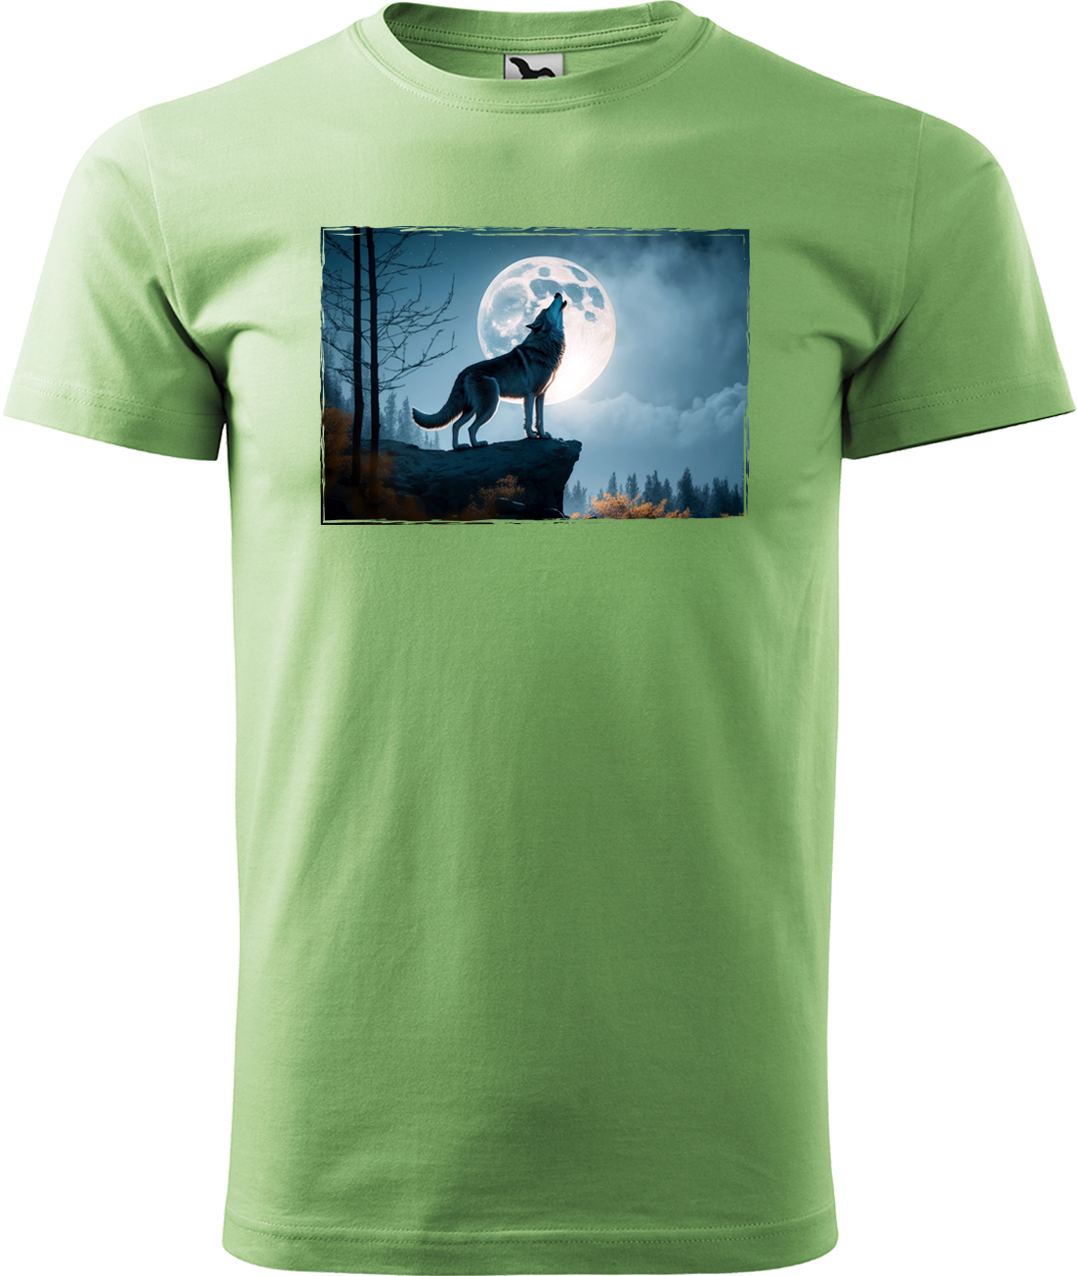 Pánské tričko s vlkem - Vyjící vlk Velikost: M, Barva: Trávově zelená (39)